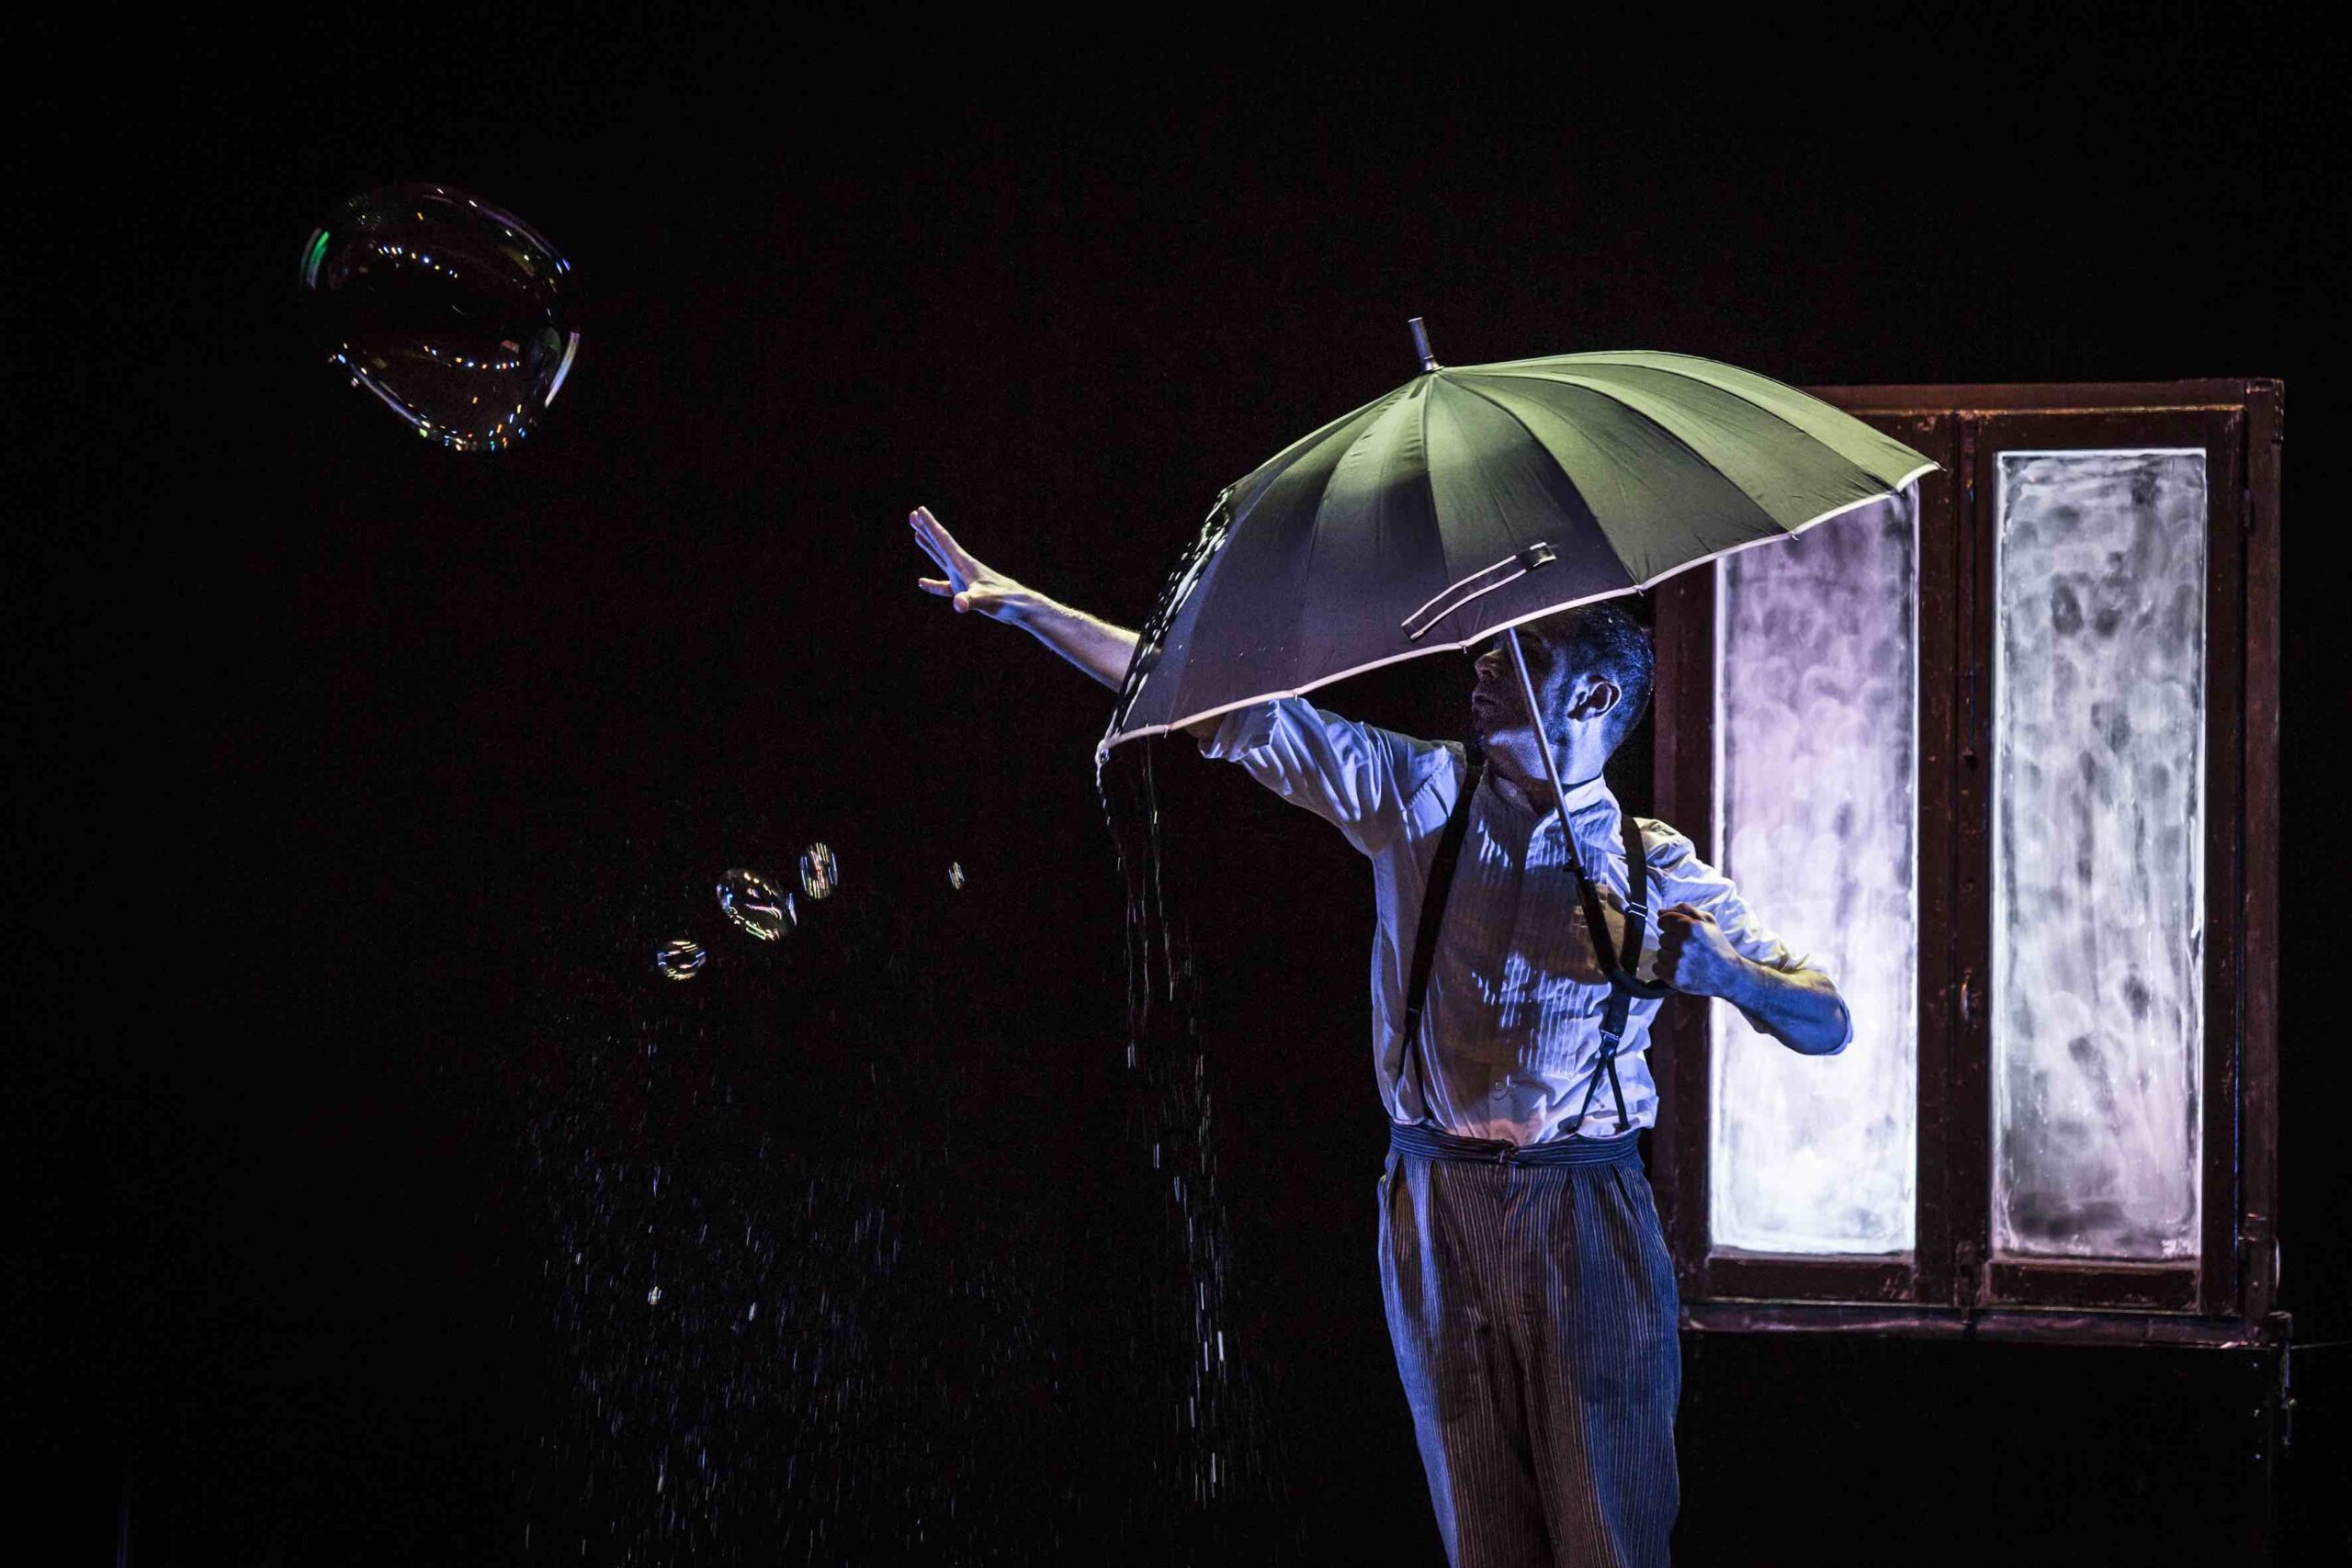 La magia delle bolle di sapone incontra il teatro con “L’omino della pioggia” a Rosignano Marittimo